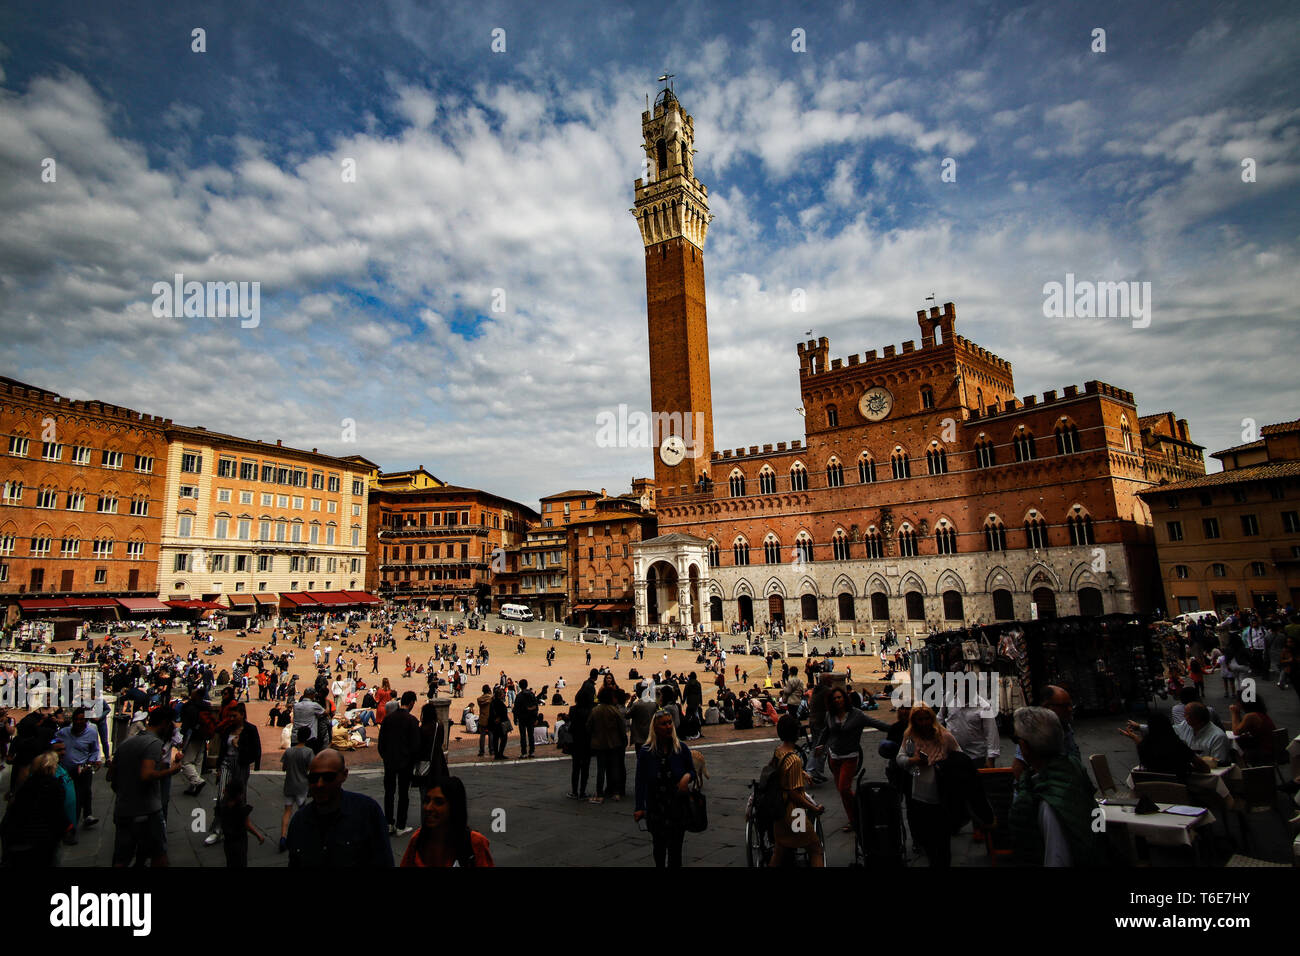 Piazza del campo con la torre del Mangia, Siena, Italia, Toscana, in provincia di Siena Foto Stock